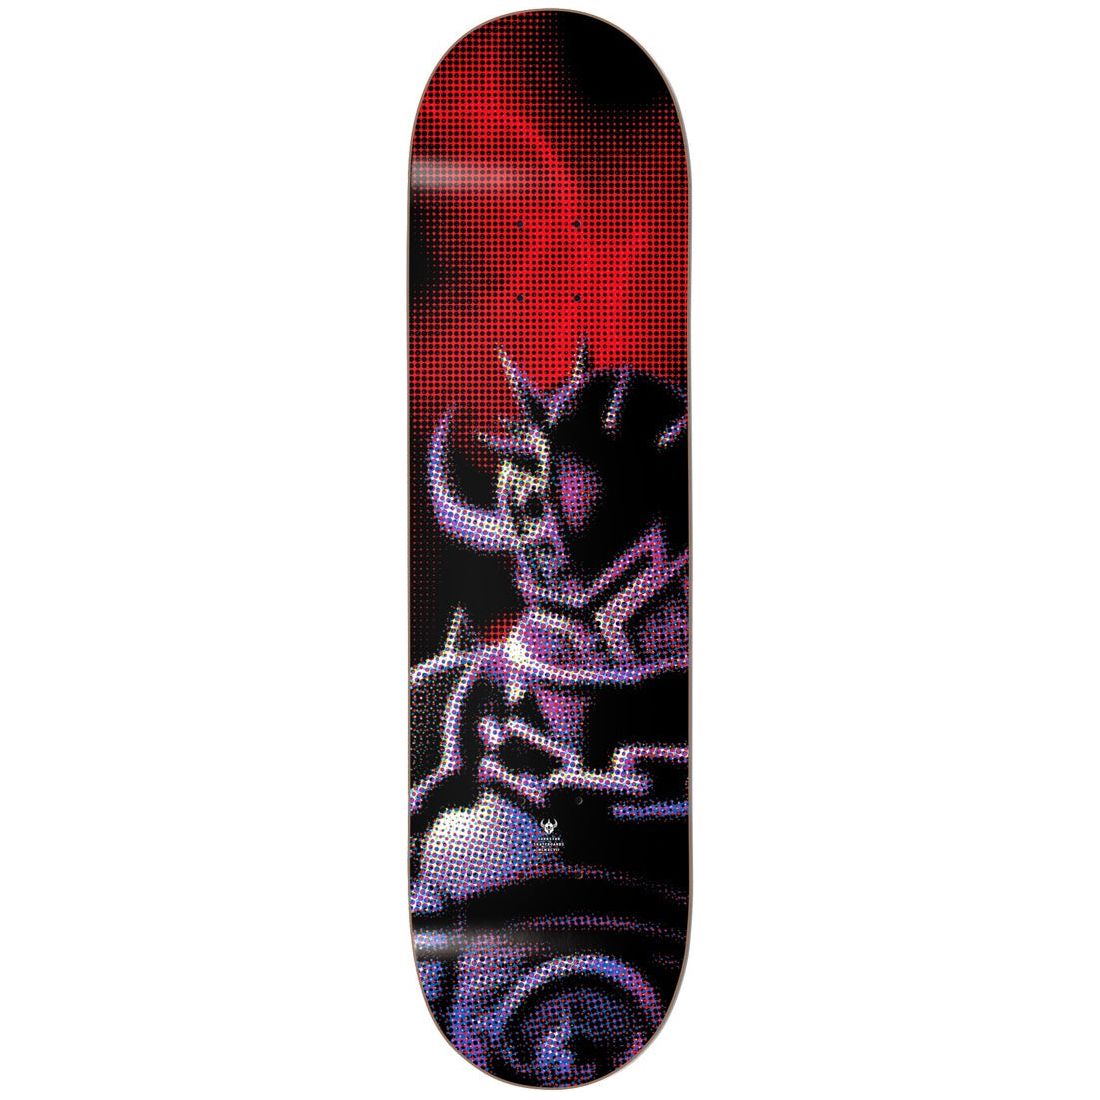 Darkstar Decks Dots Red 7.75 Skateboard Deck